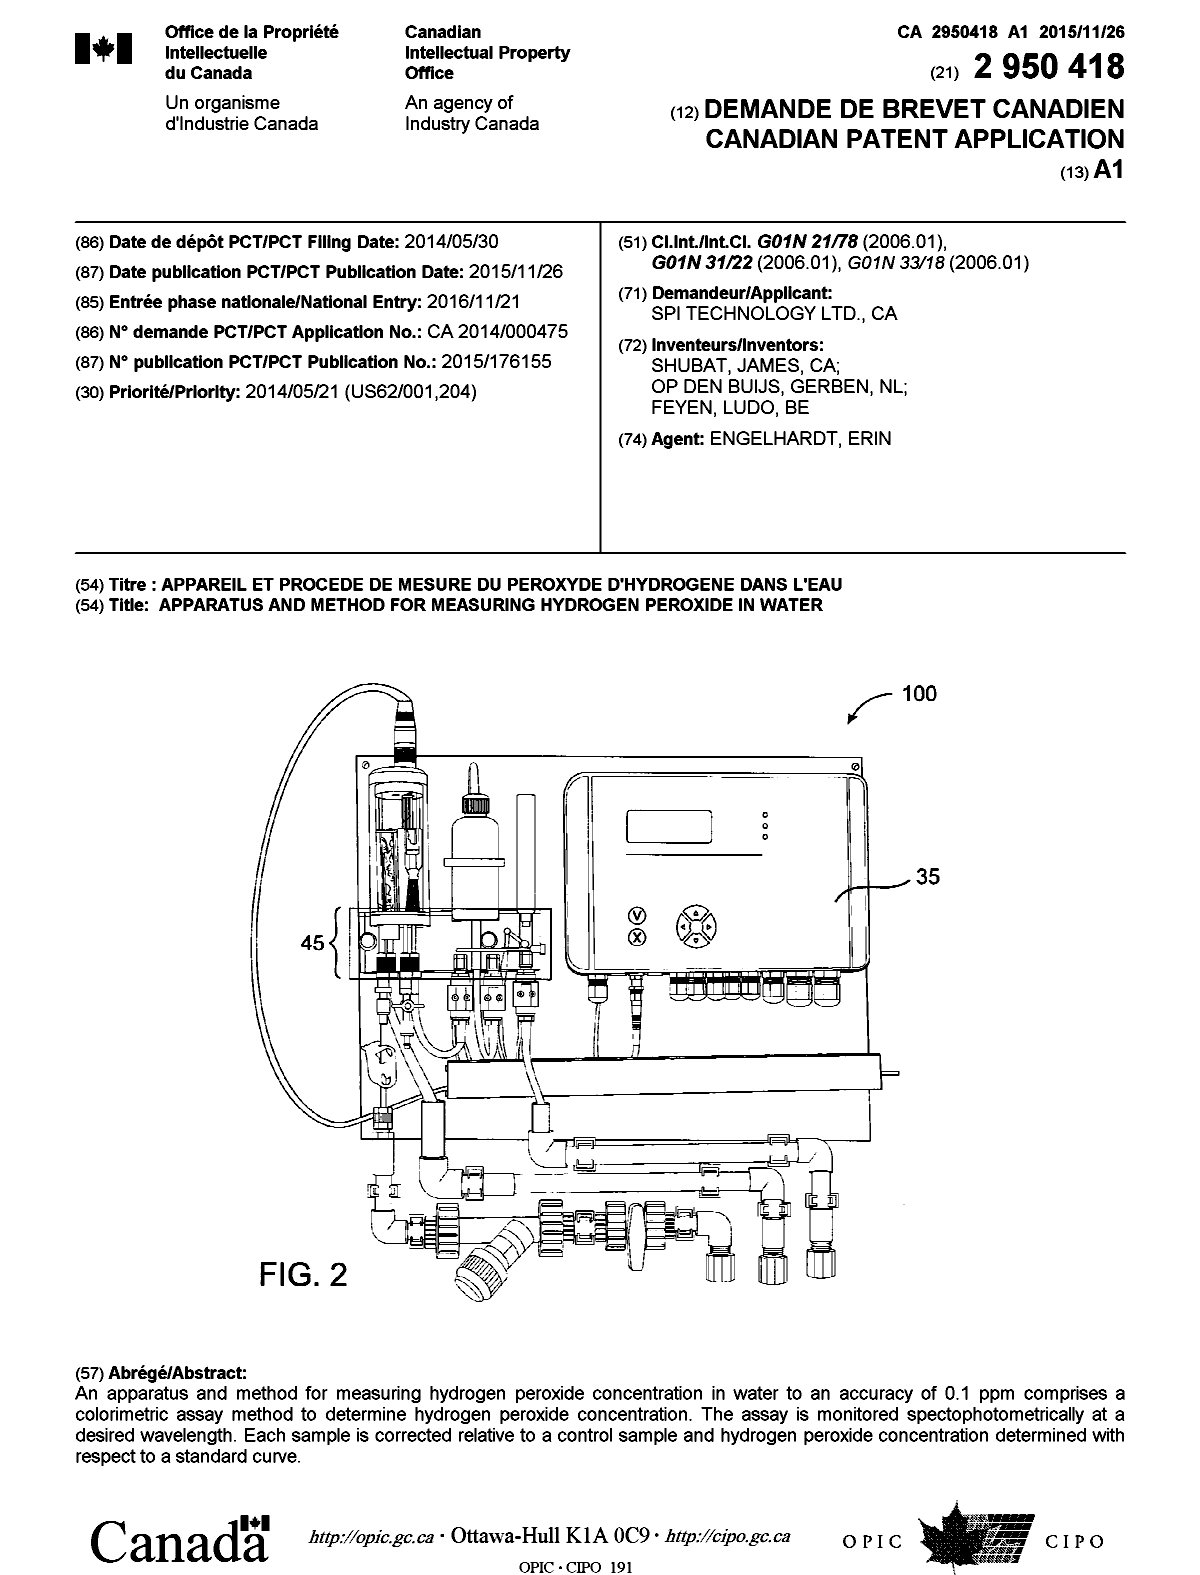 Document de brevet canadien 2950418. Page couverture 20151216. Image 1 de 1